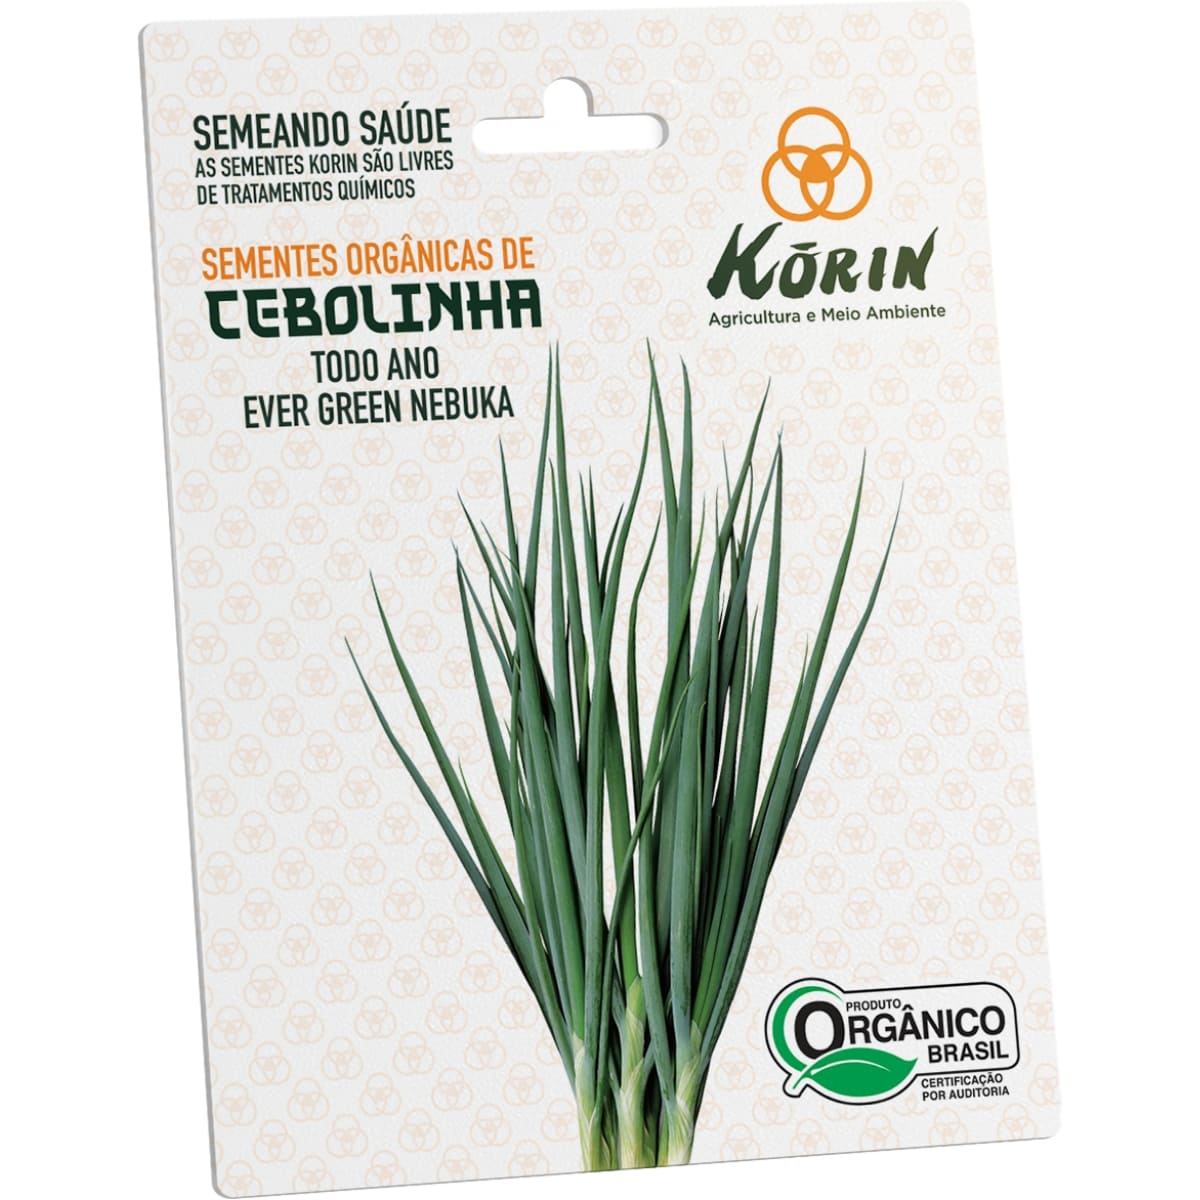 Sementes Orgânicas de Cebolinha Todo Ano Evergreen Nebuka Korin 4g - Foto 0